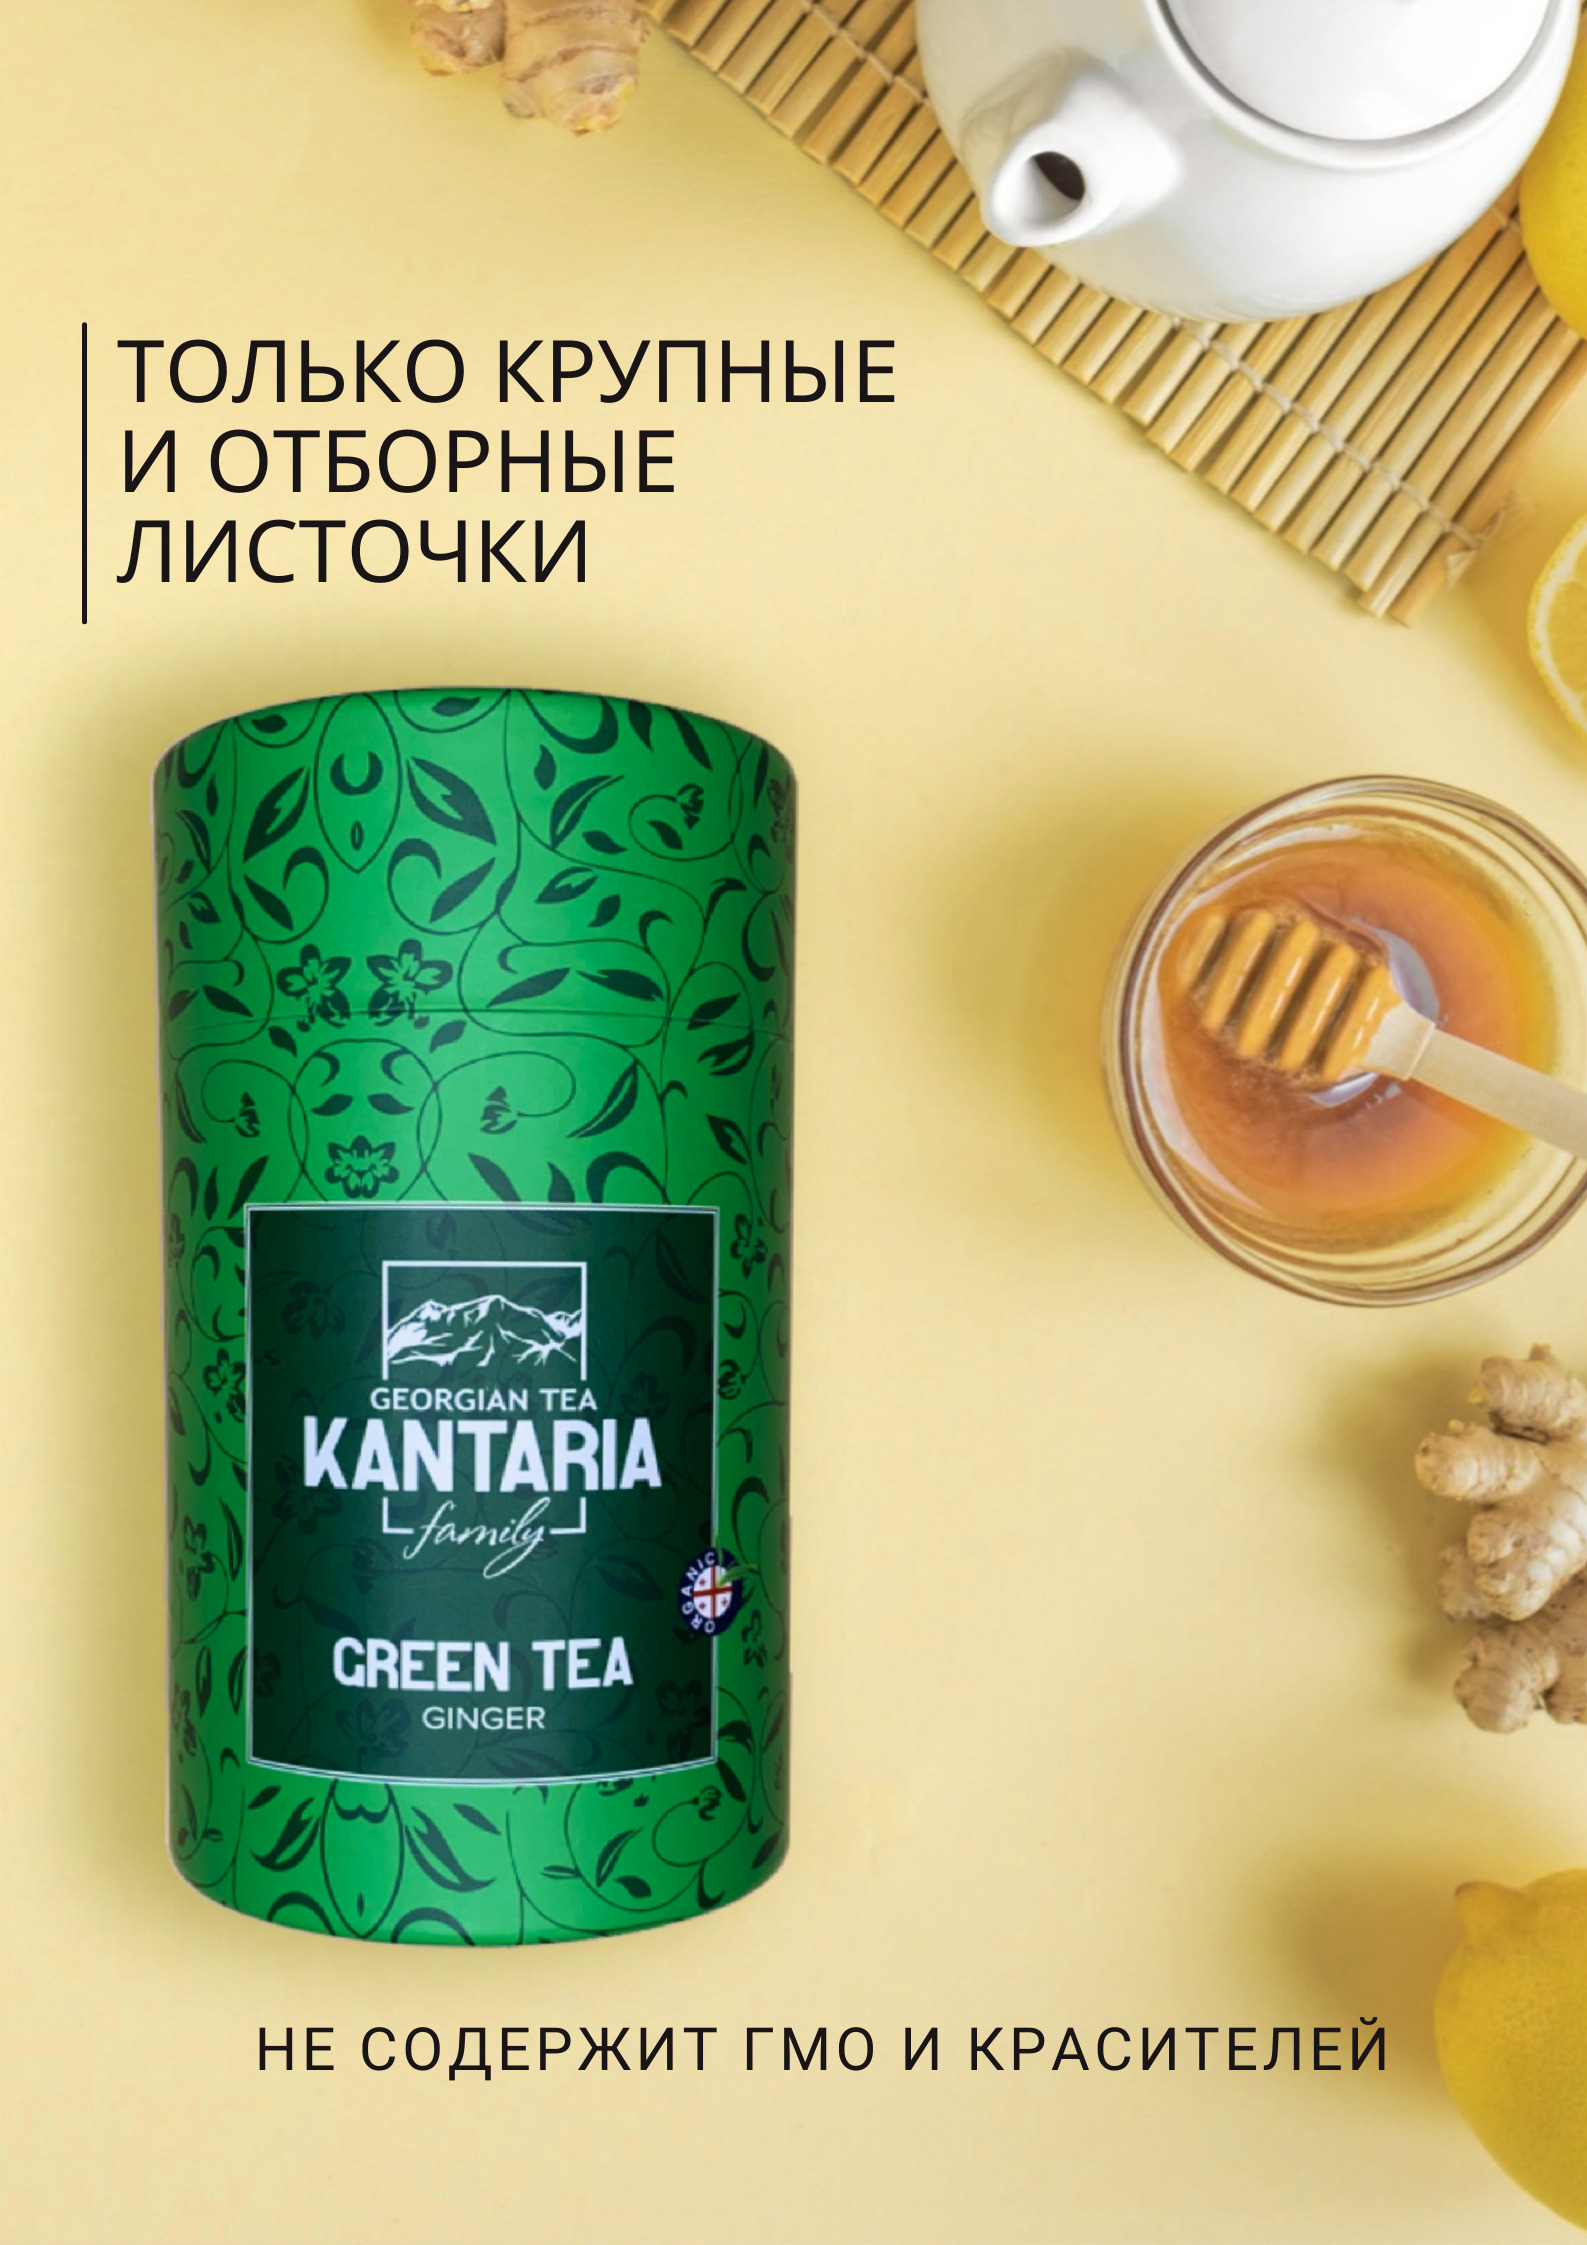 Зеленый крупнолистовой чай KANTARIA в тубе c имбирем - фото 5